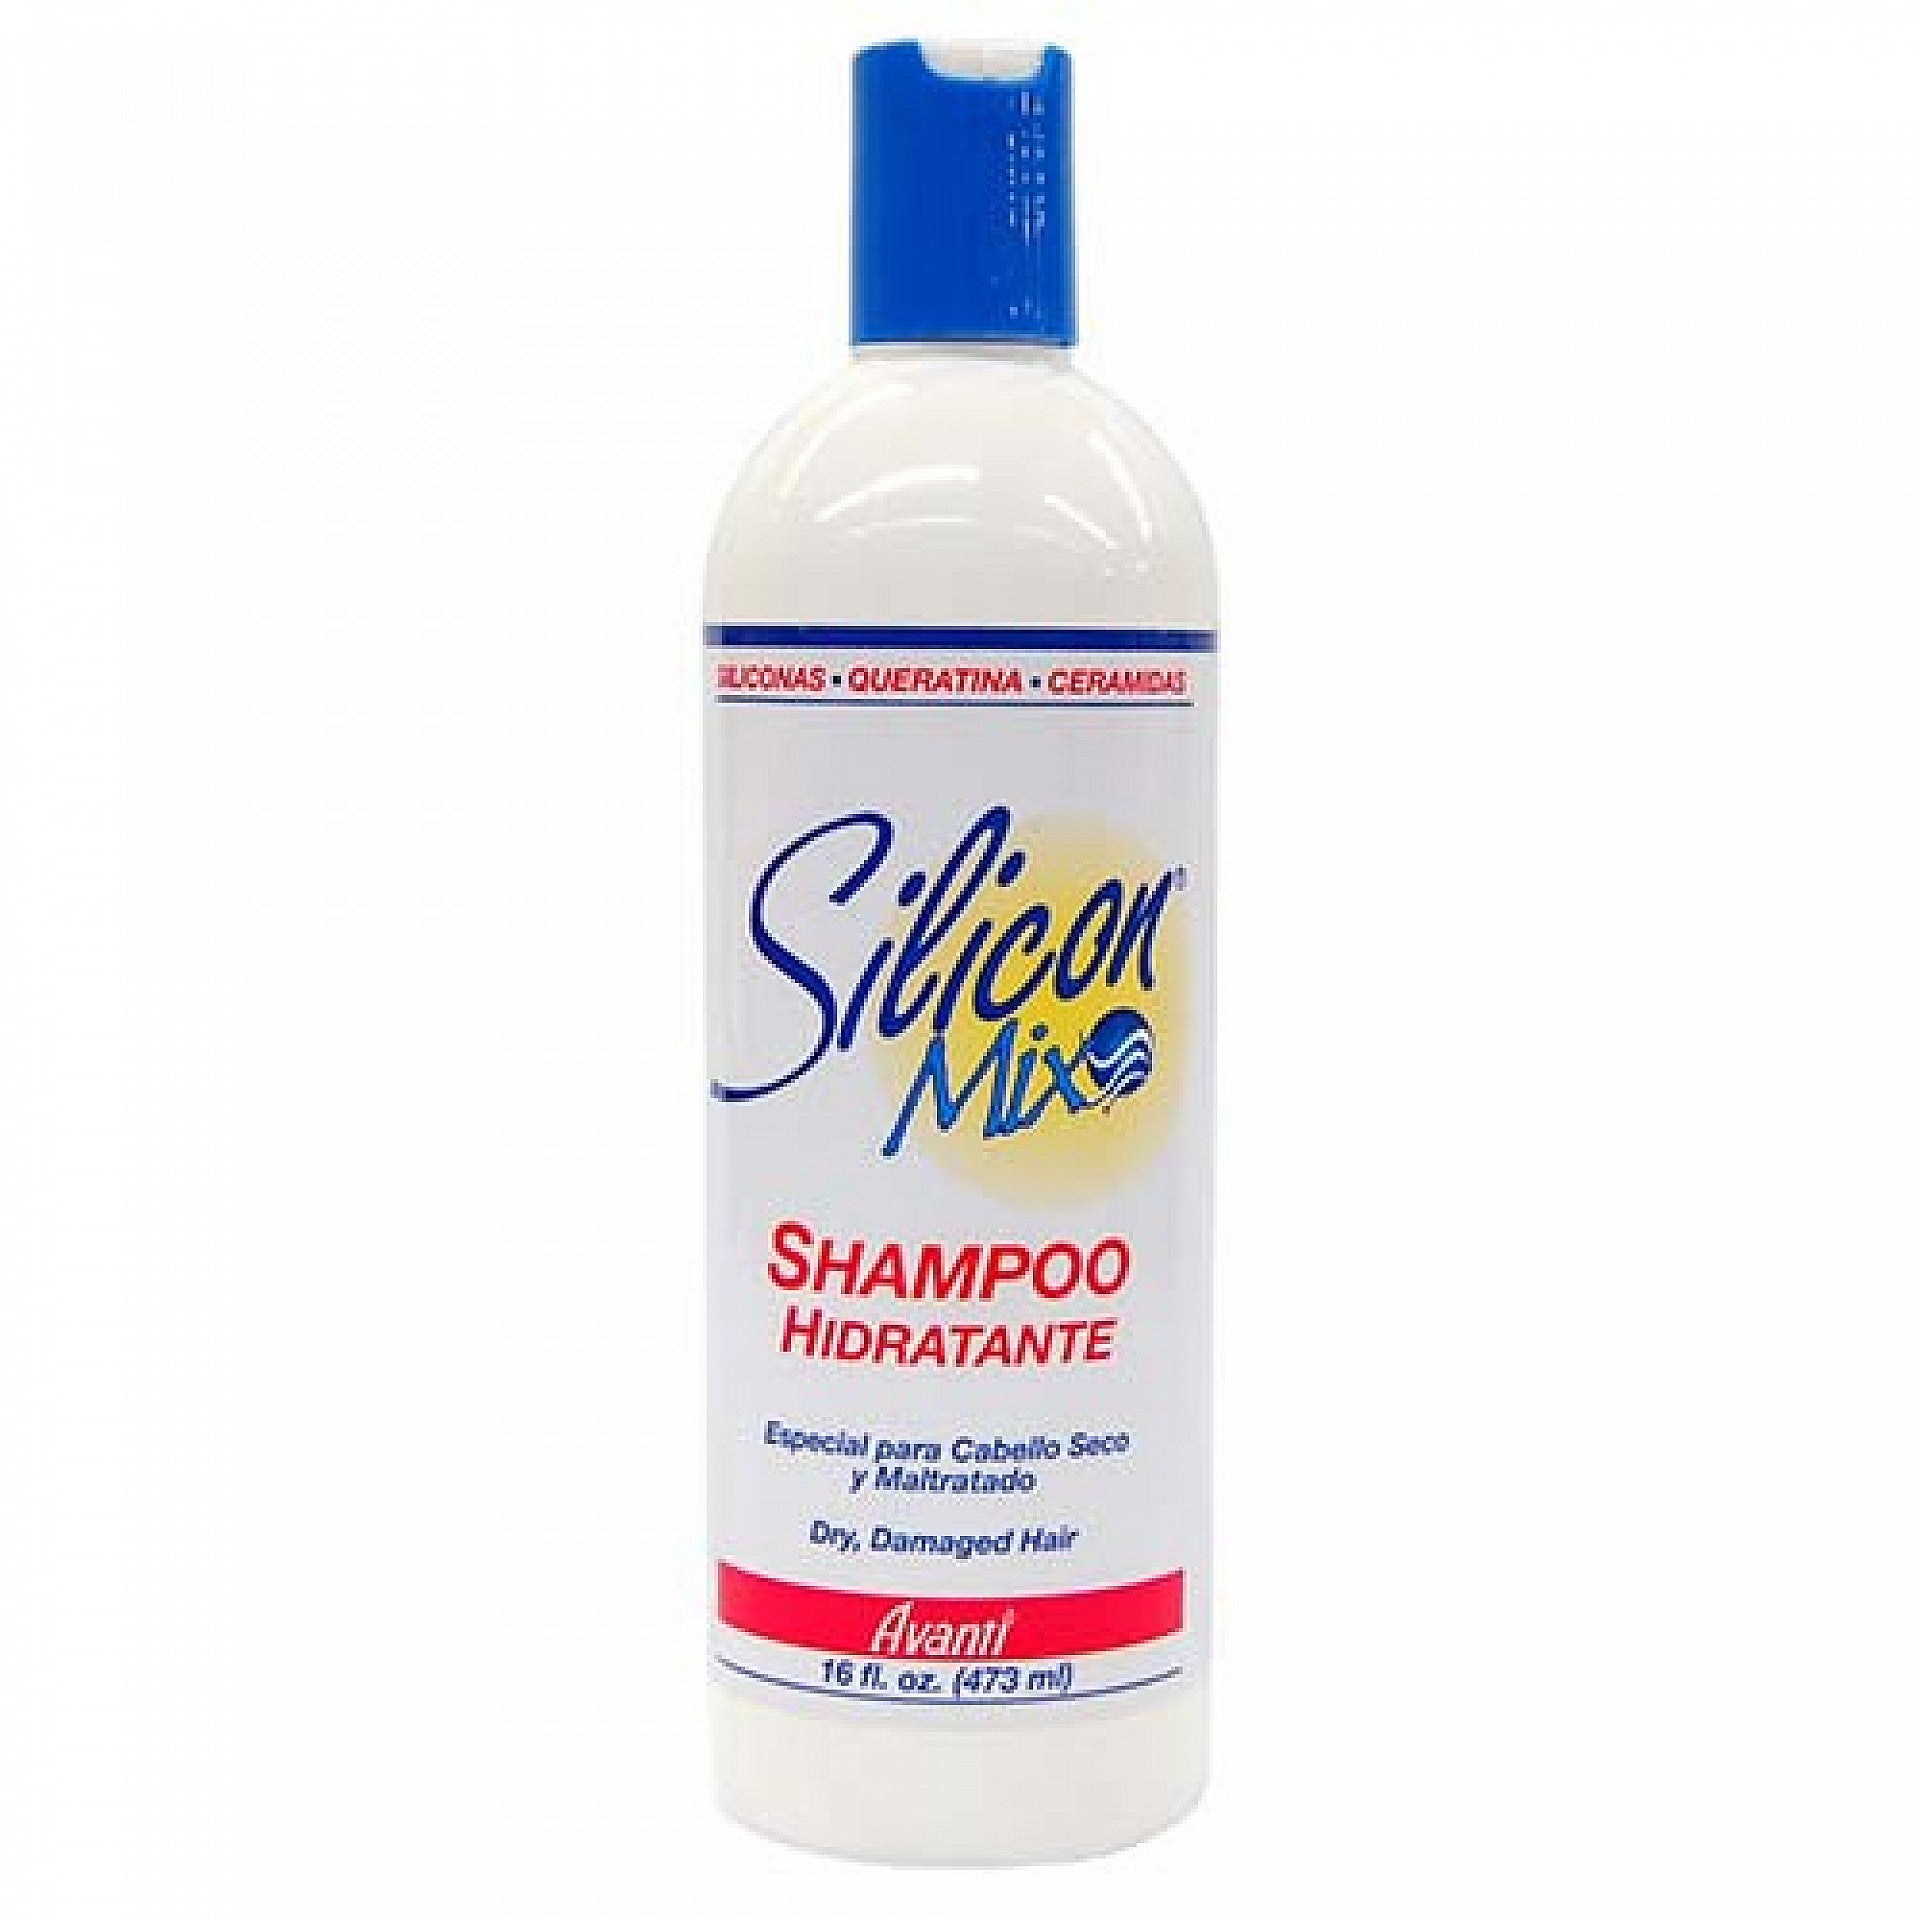 Silicon Mix Shampoo Hidratante 16fl.oz